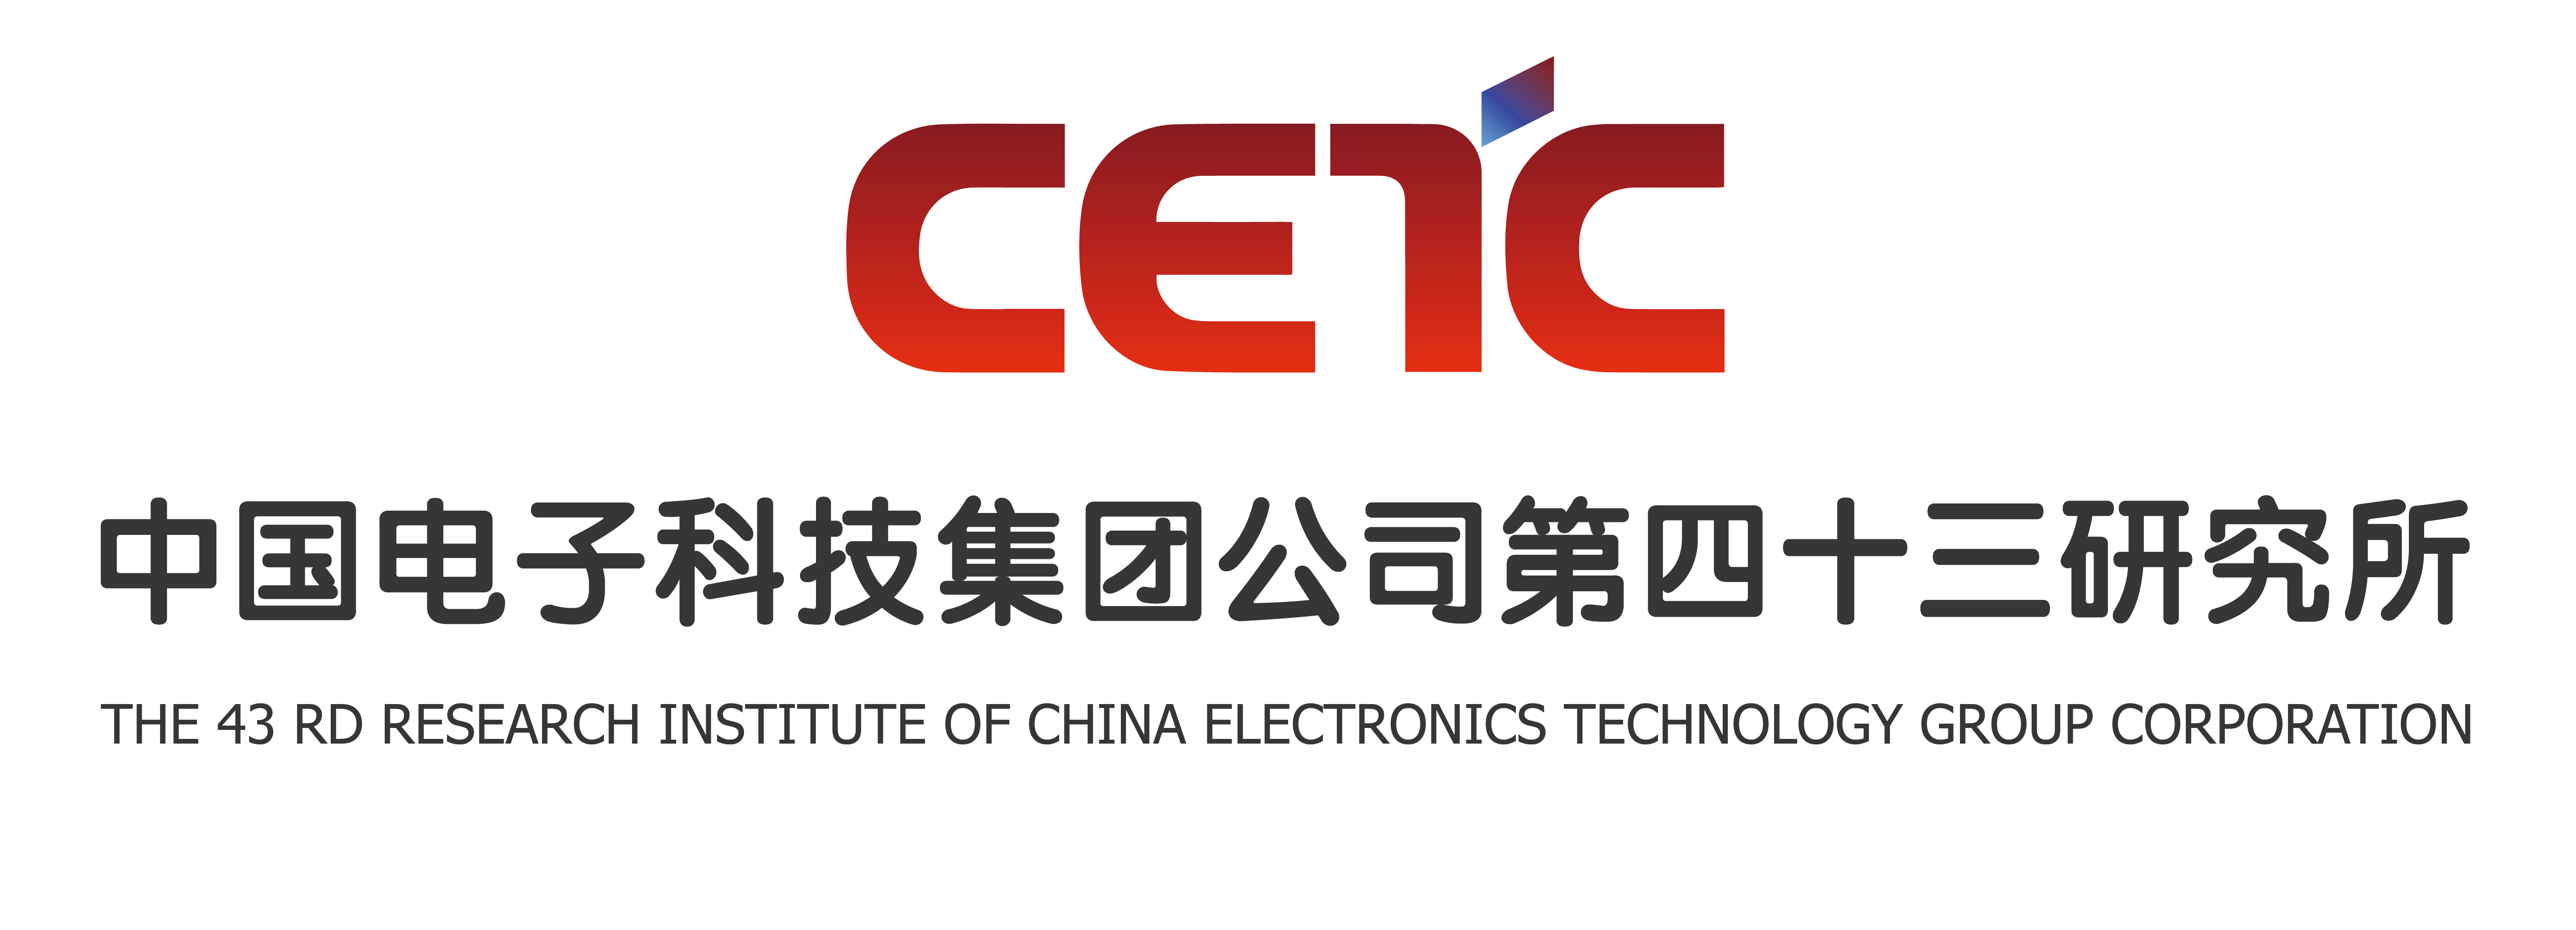 中国电子科技集团公司第四十三研究所